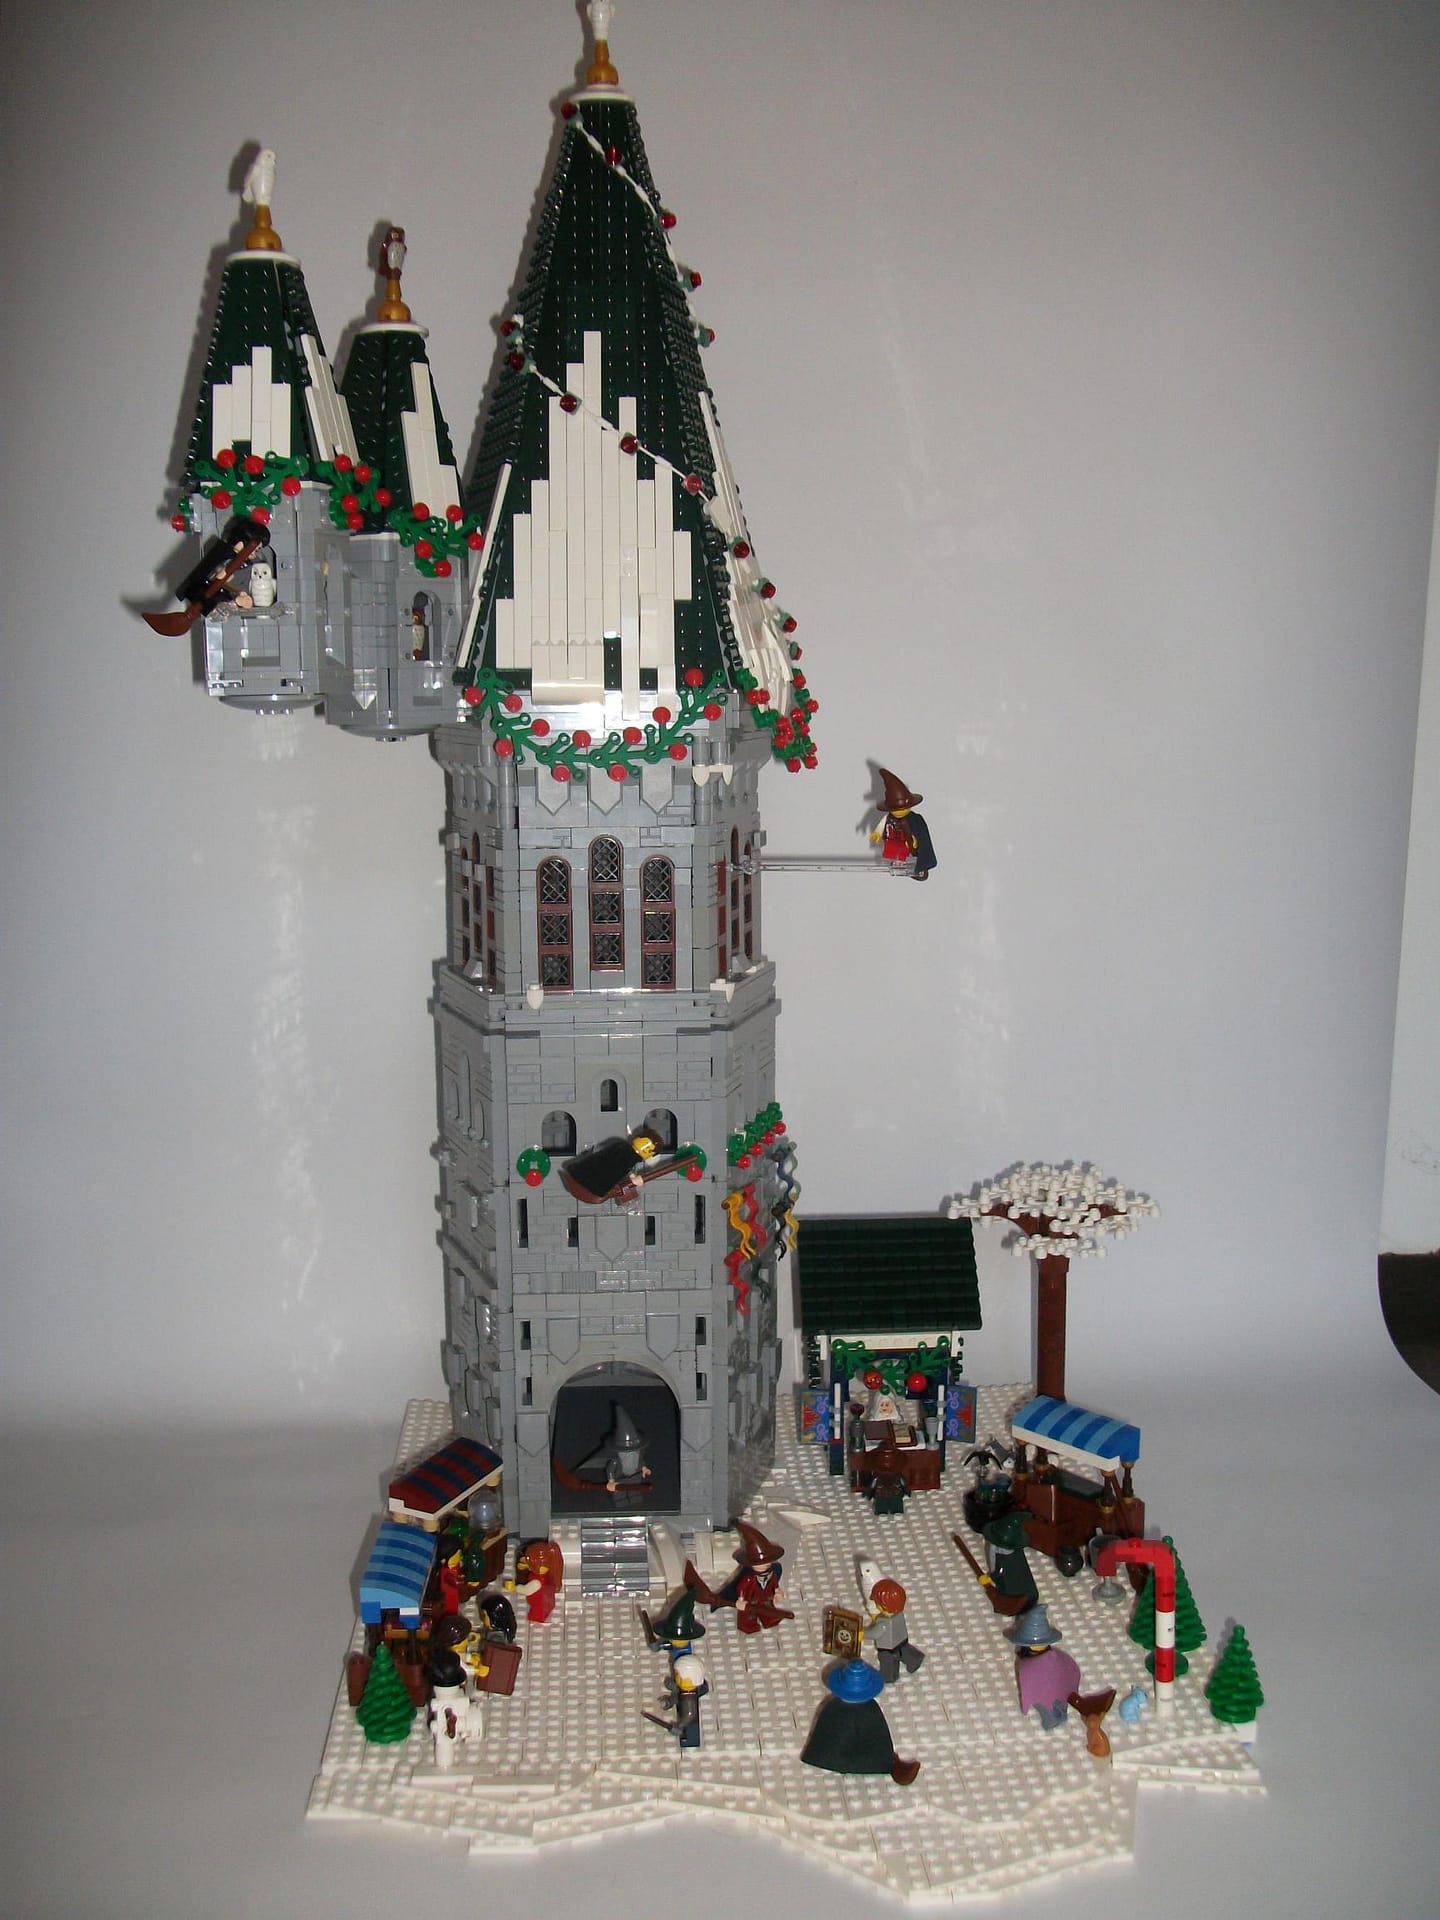 Concurs Winter Brickland – Creatia 11: Wizarding World Christmas Festival